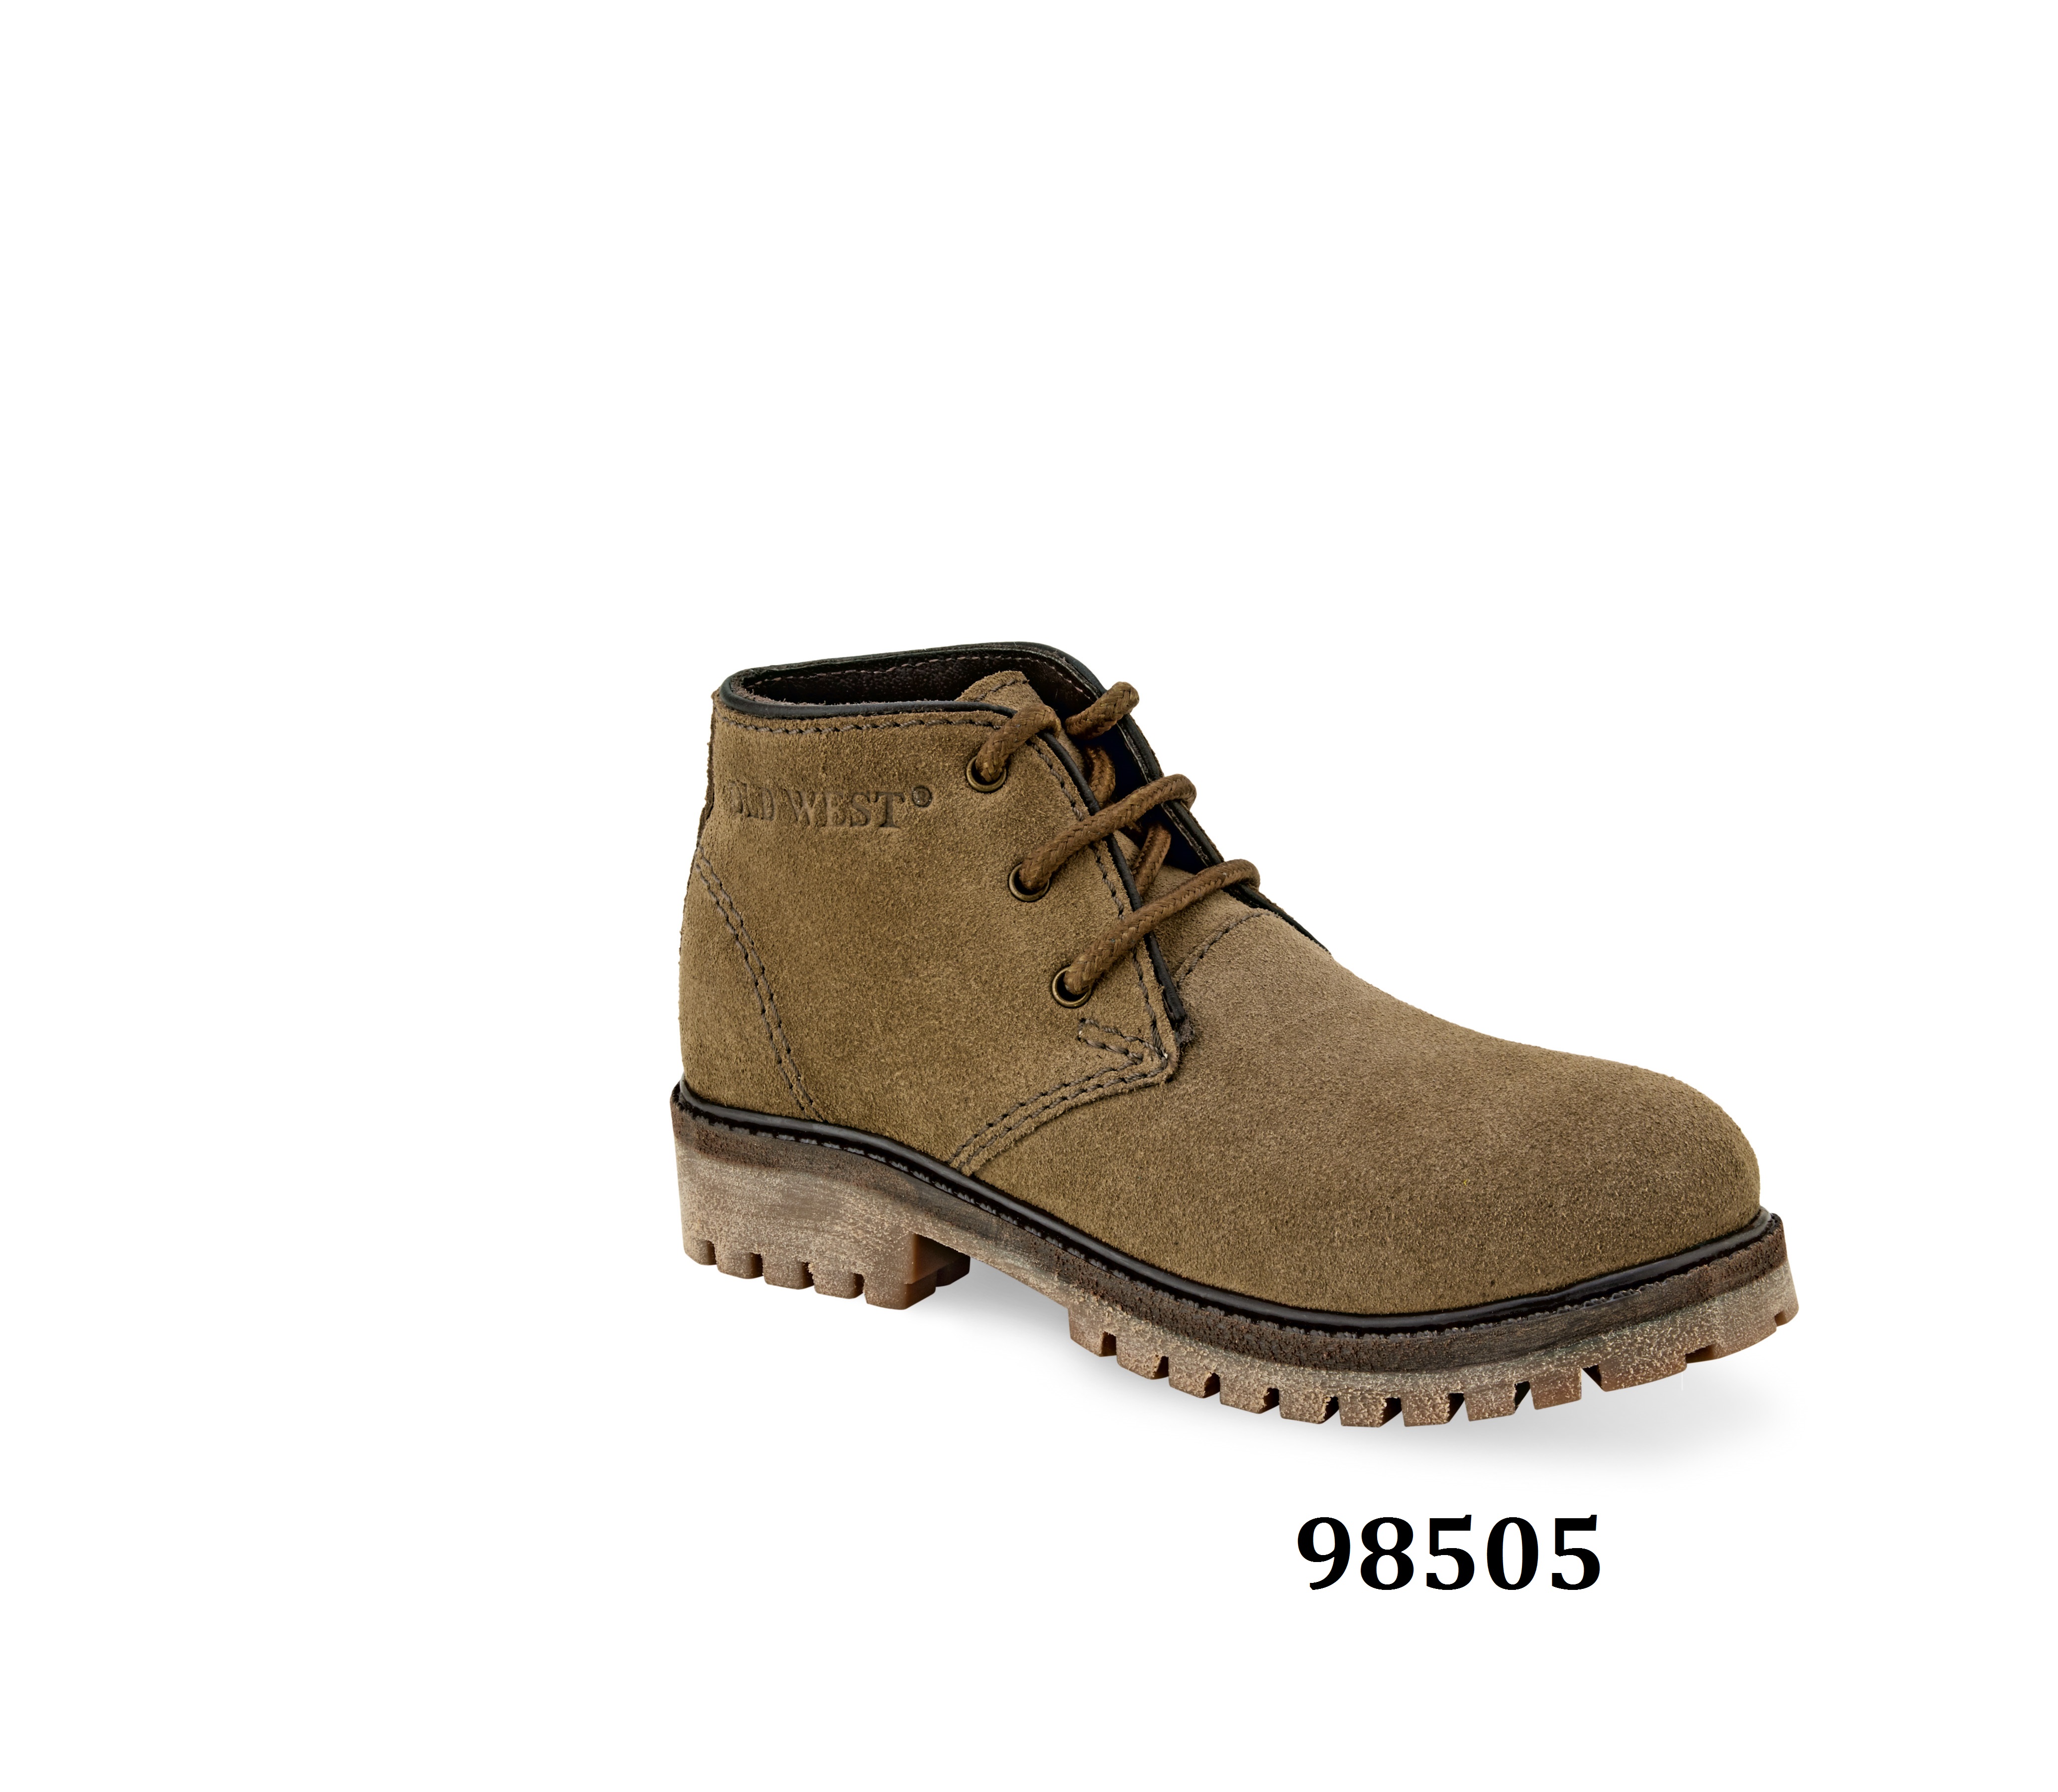 Outdoor boots children 98505